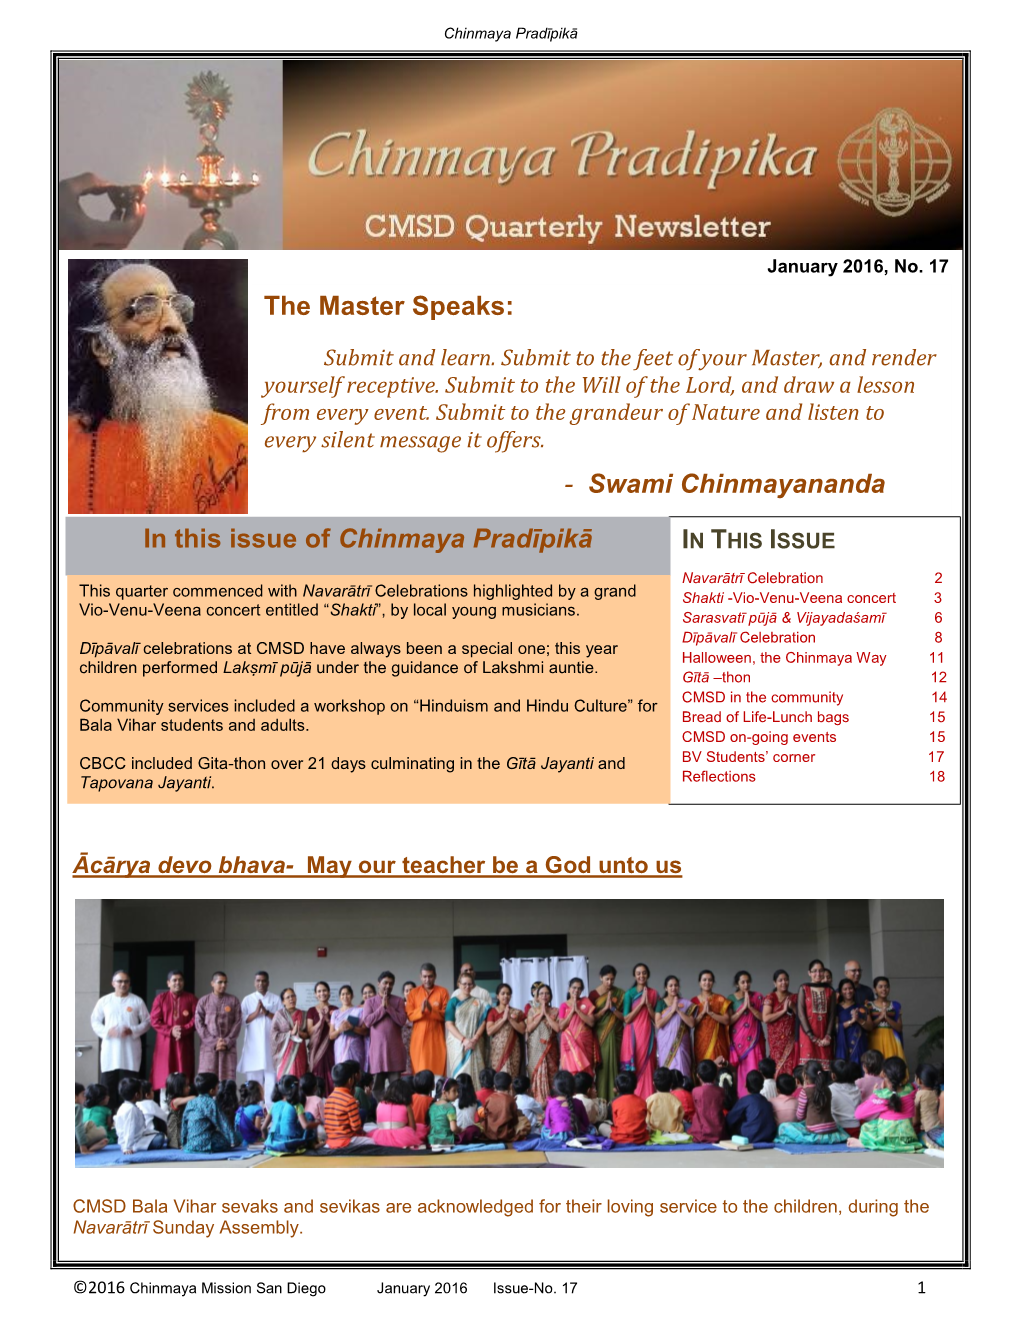 Swami Chinmayananda in This Issue of Chinmaya Pradīpikā